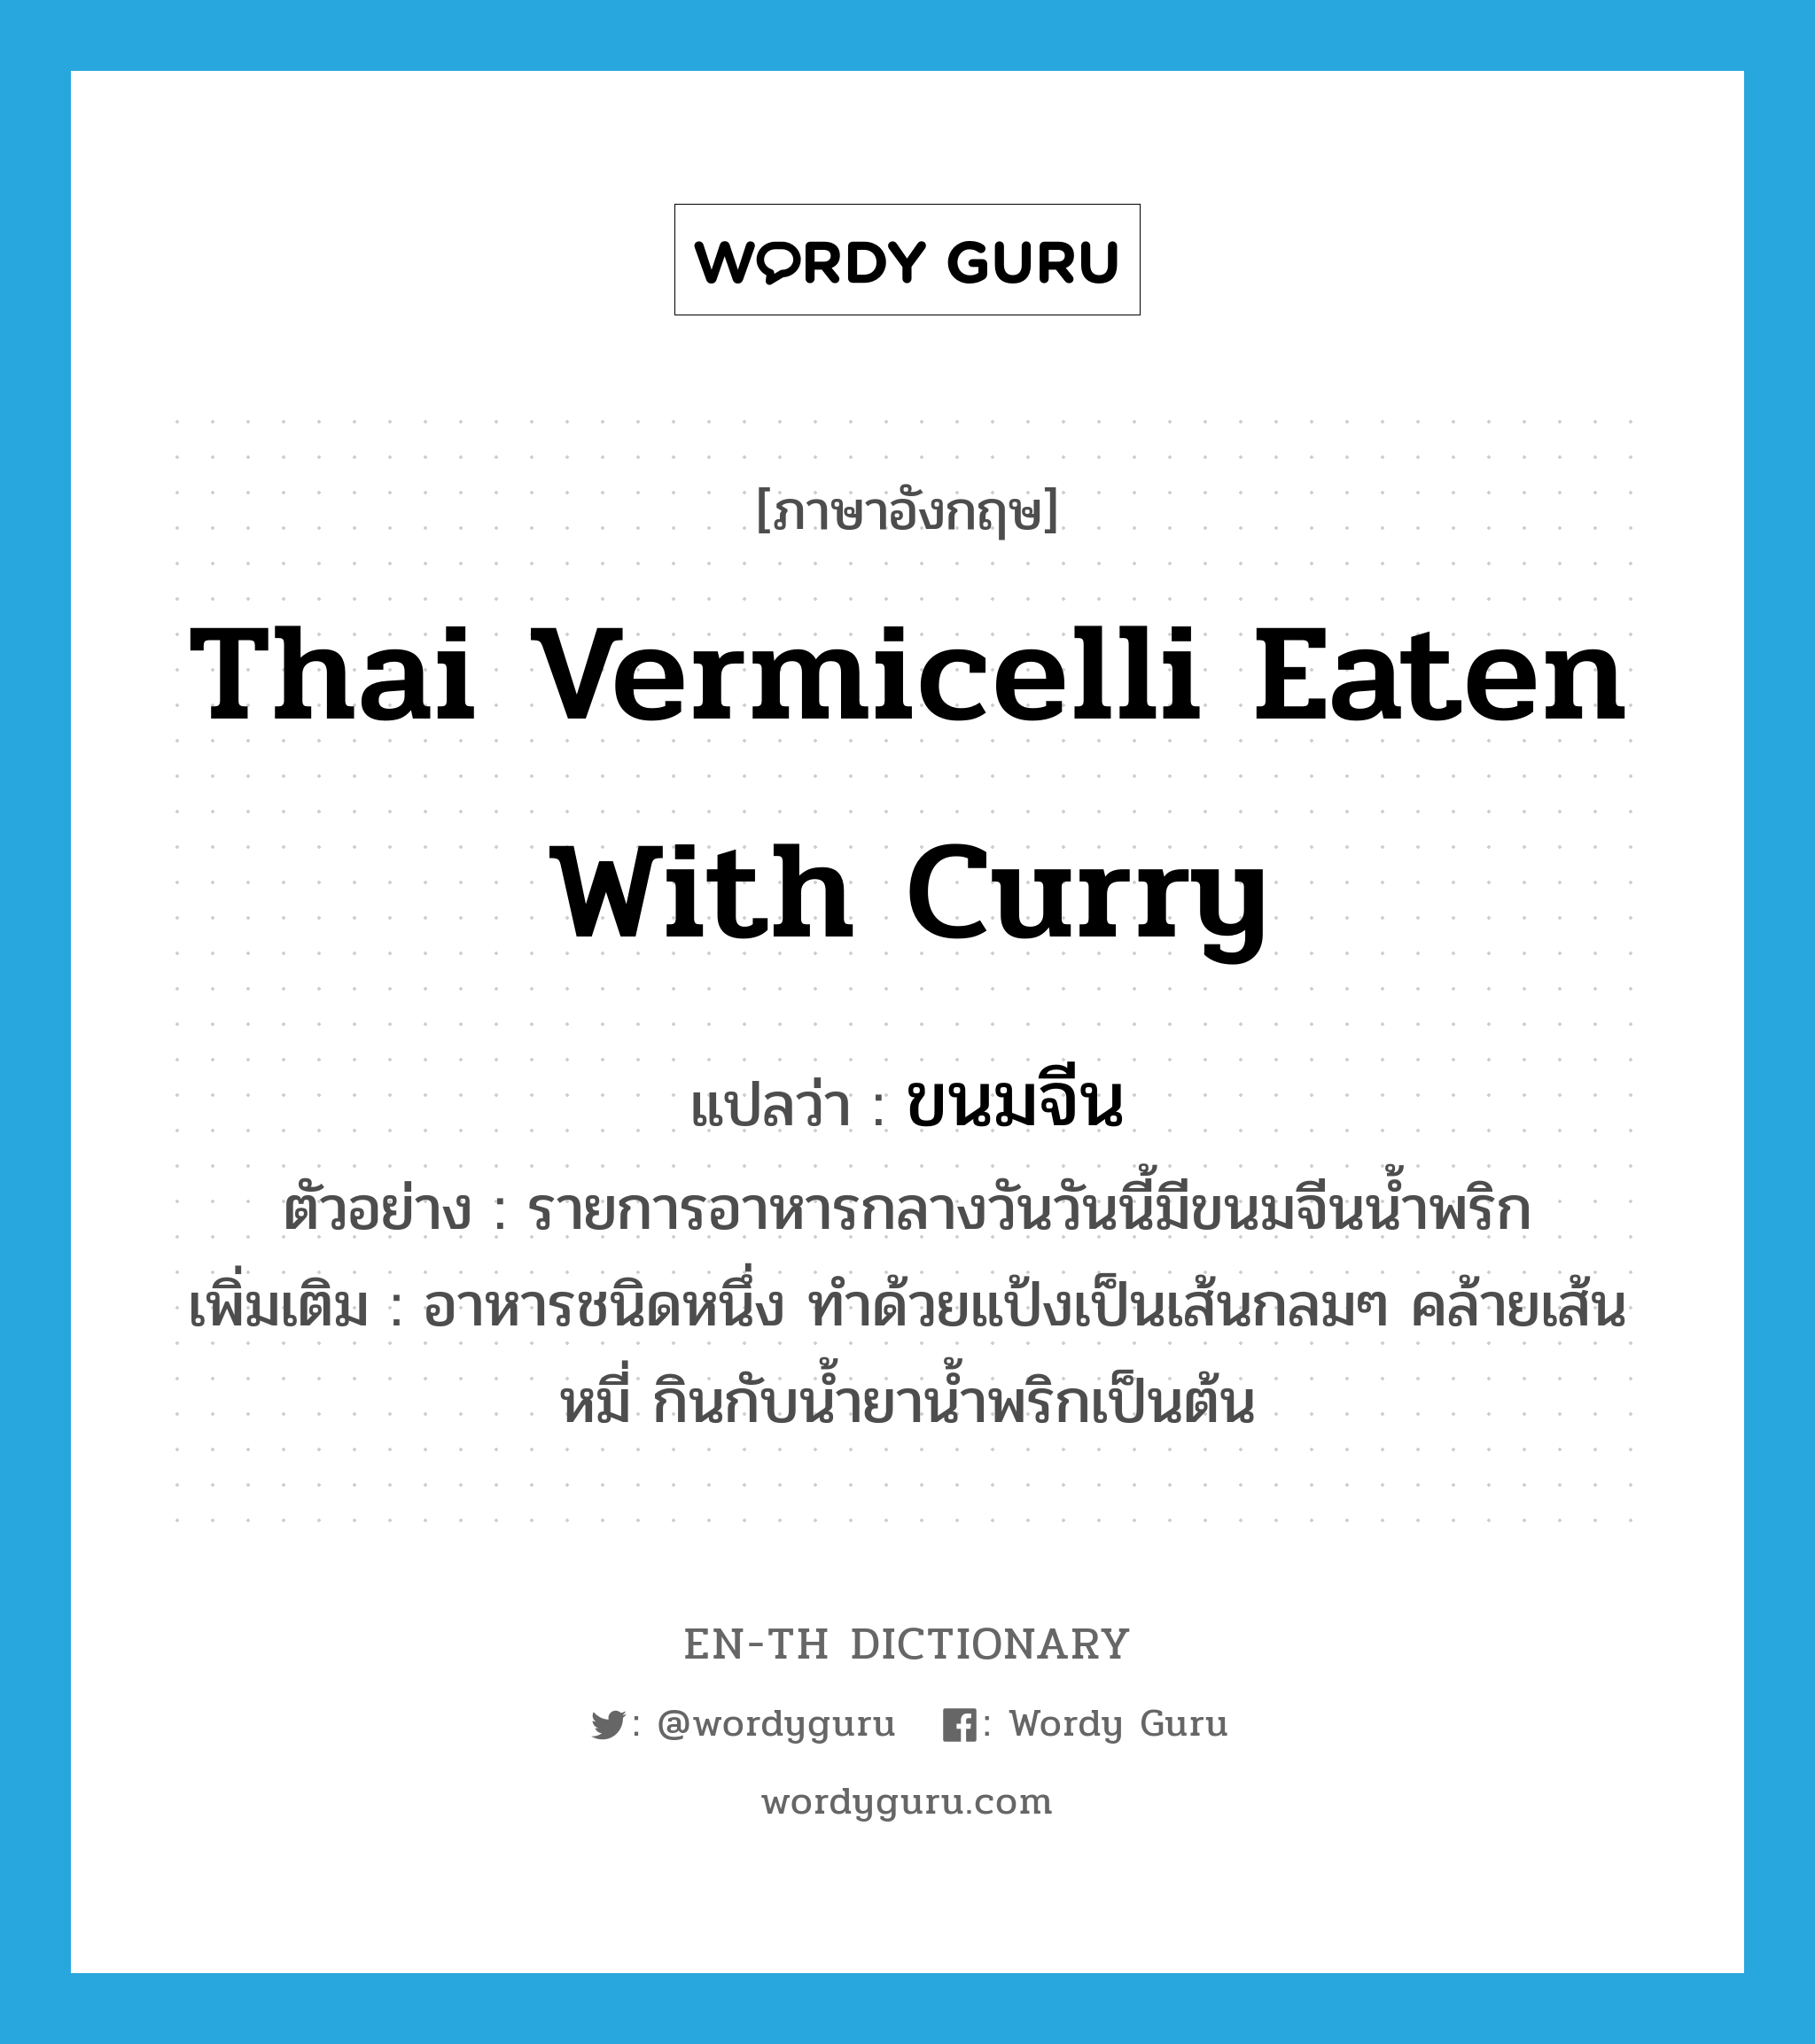 ขนมจีน ภาษาอังกฤษ?, คำศัพท์ภาษาอังกฤษ ขนมจีน แปลว่า Thai vermicelli eaten with curry ประเภท N ตัวอย่าง รายการอาหารกลางวันวันนี้มีขนมจีนน้ำพริก เพิ่มเติม อาหารชนิดหนึ่ง ทำด้วยแป้งเป็นเส้นกลมๆ คล้ายเส้นหมี่ กินกับน้ำยาน้ำพริกเป็นต้น หมวด N